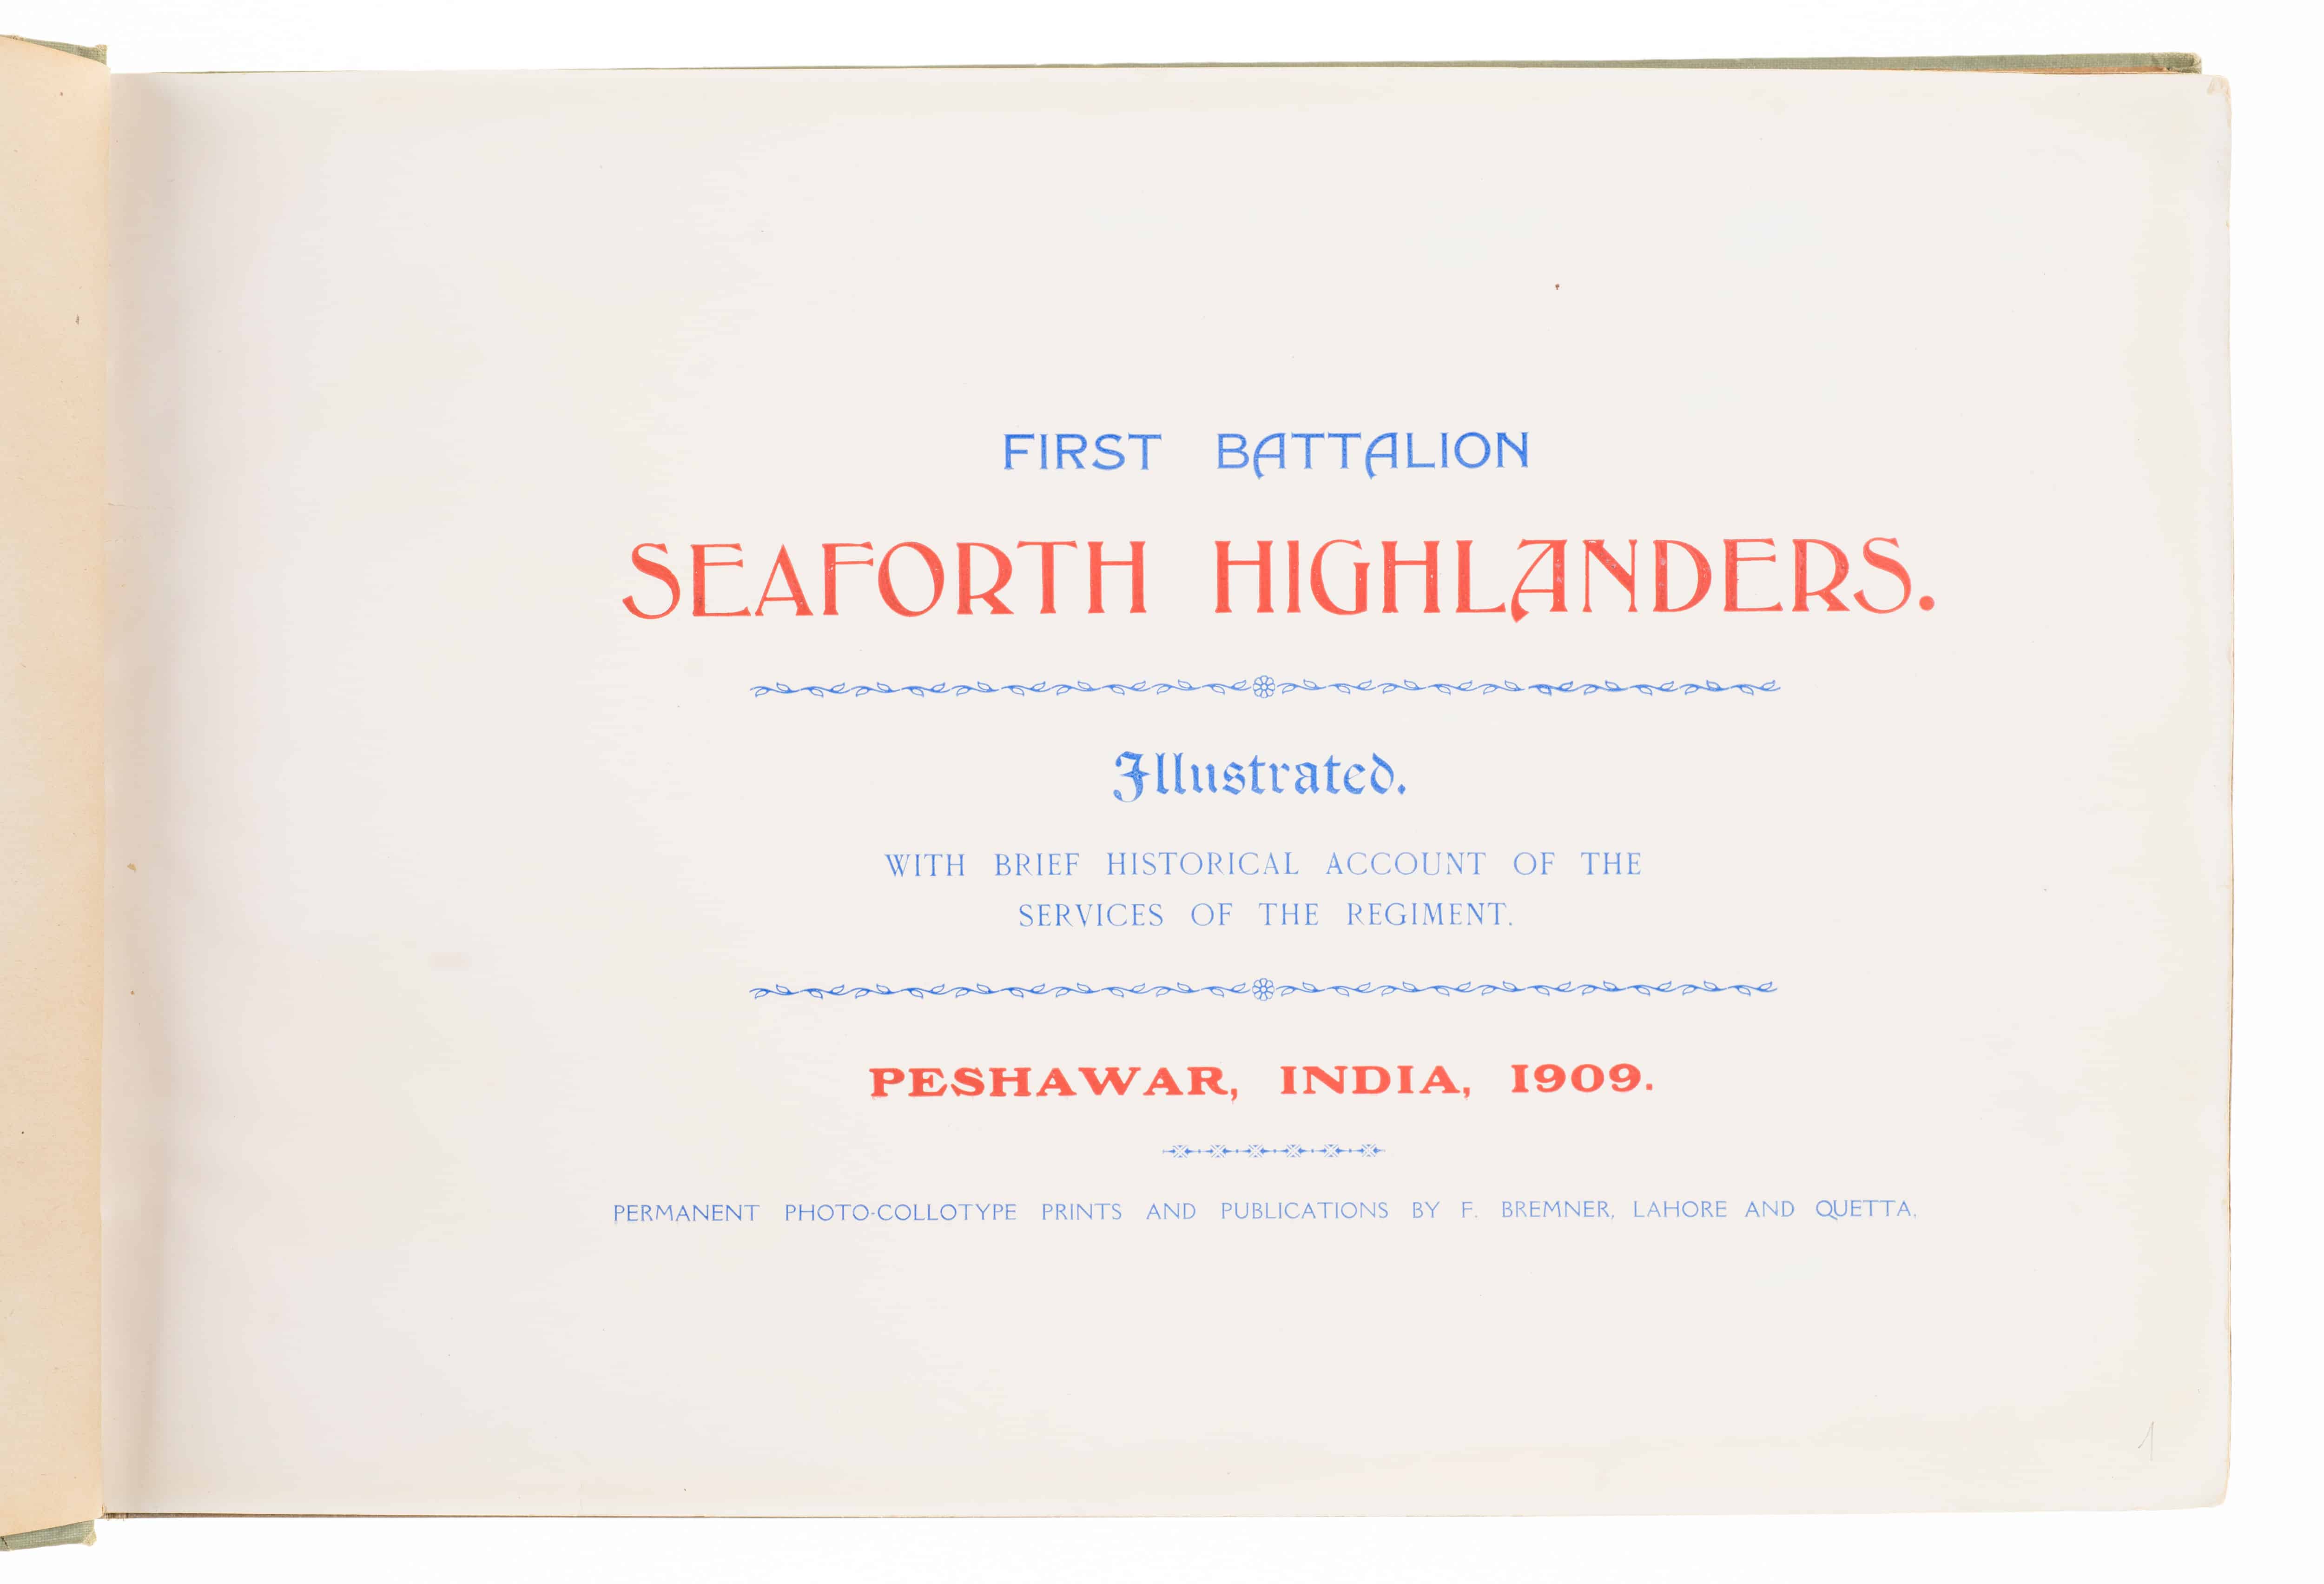 Album „First Battalion Seaforth Highlanders”